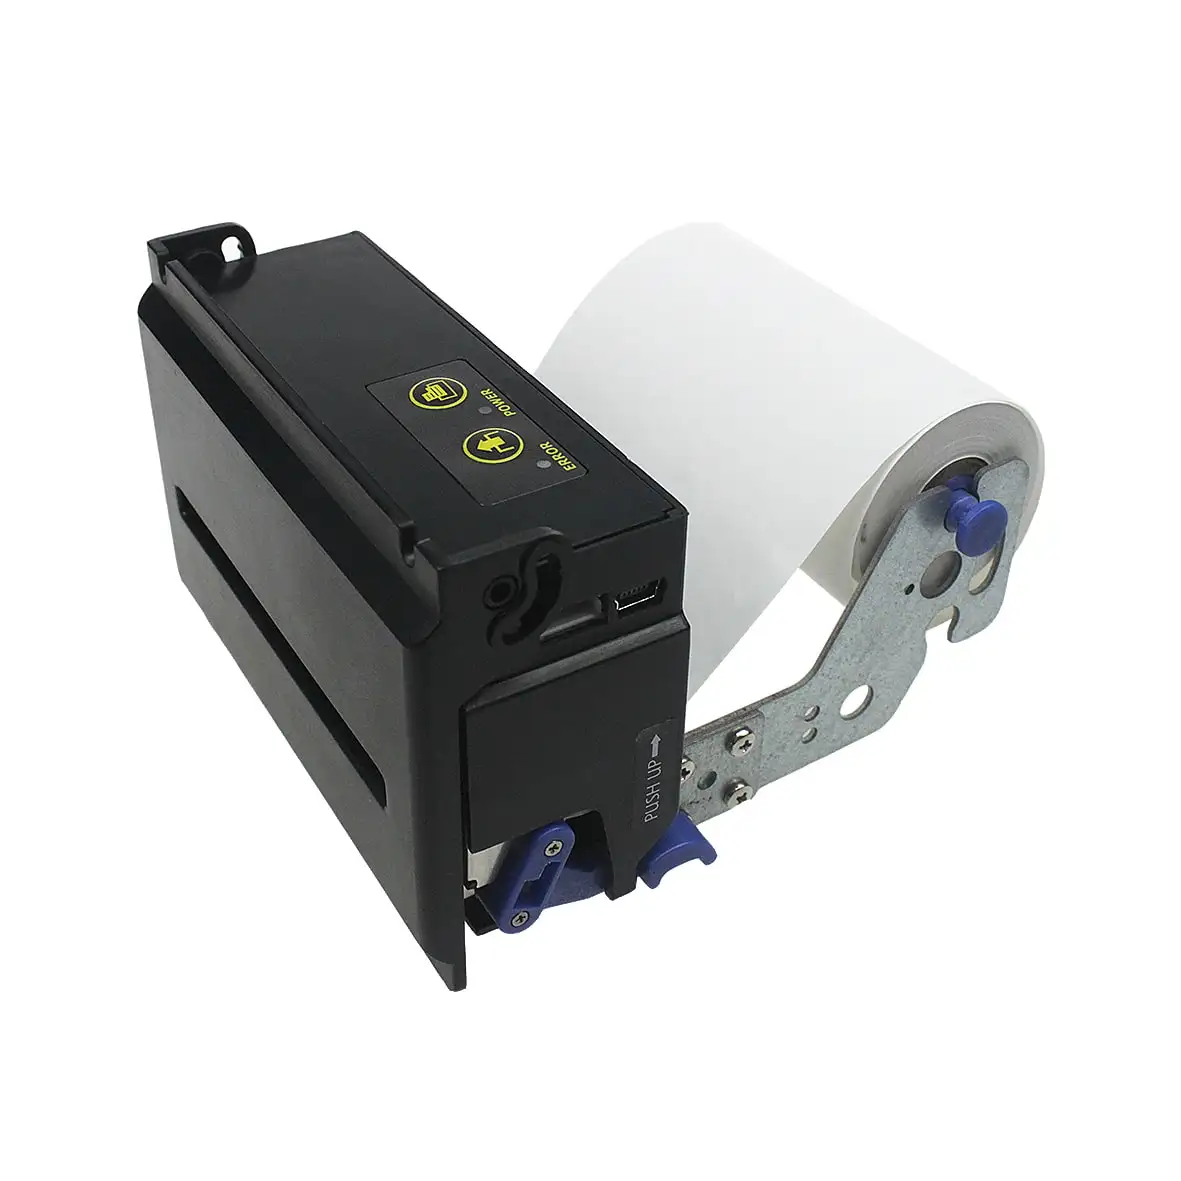 Impressora térmica Cashino 80mm Quiosque de recibos com cortador automático Impressora térmica em estoque com cortador automático